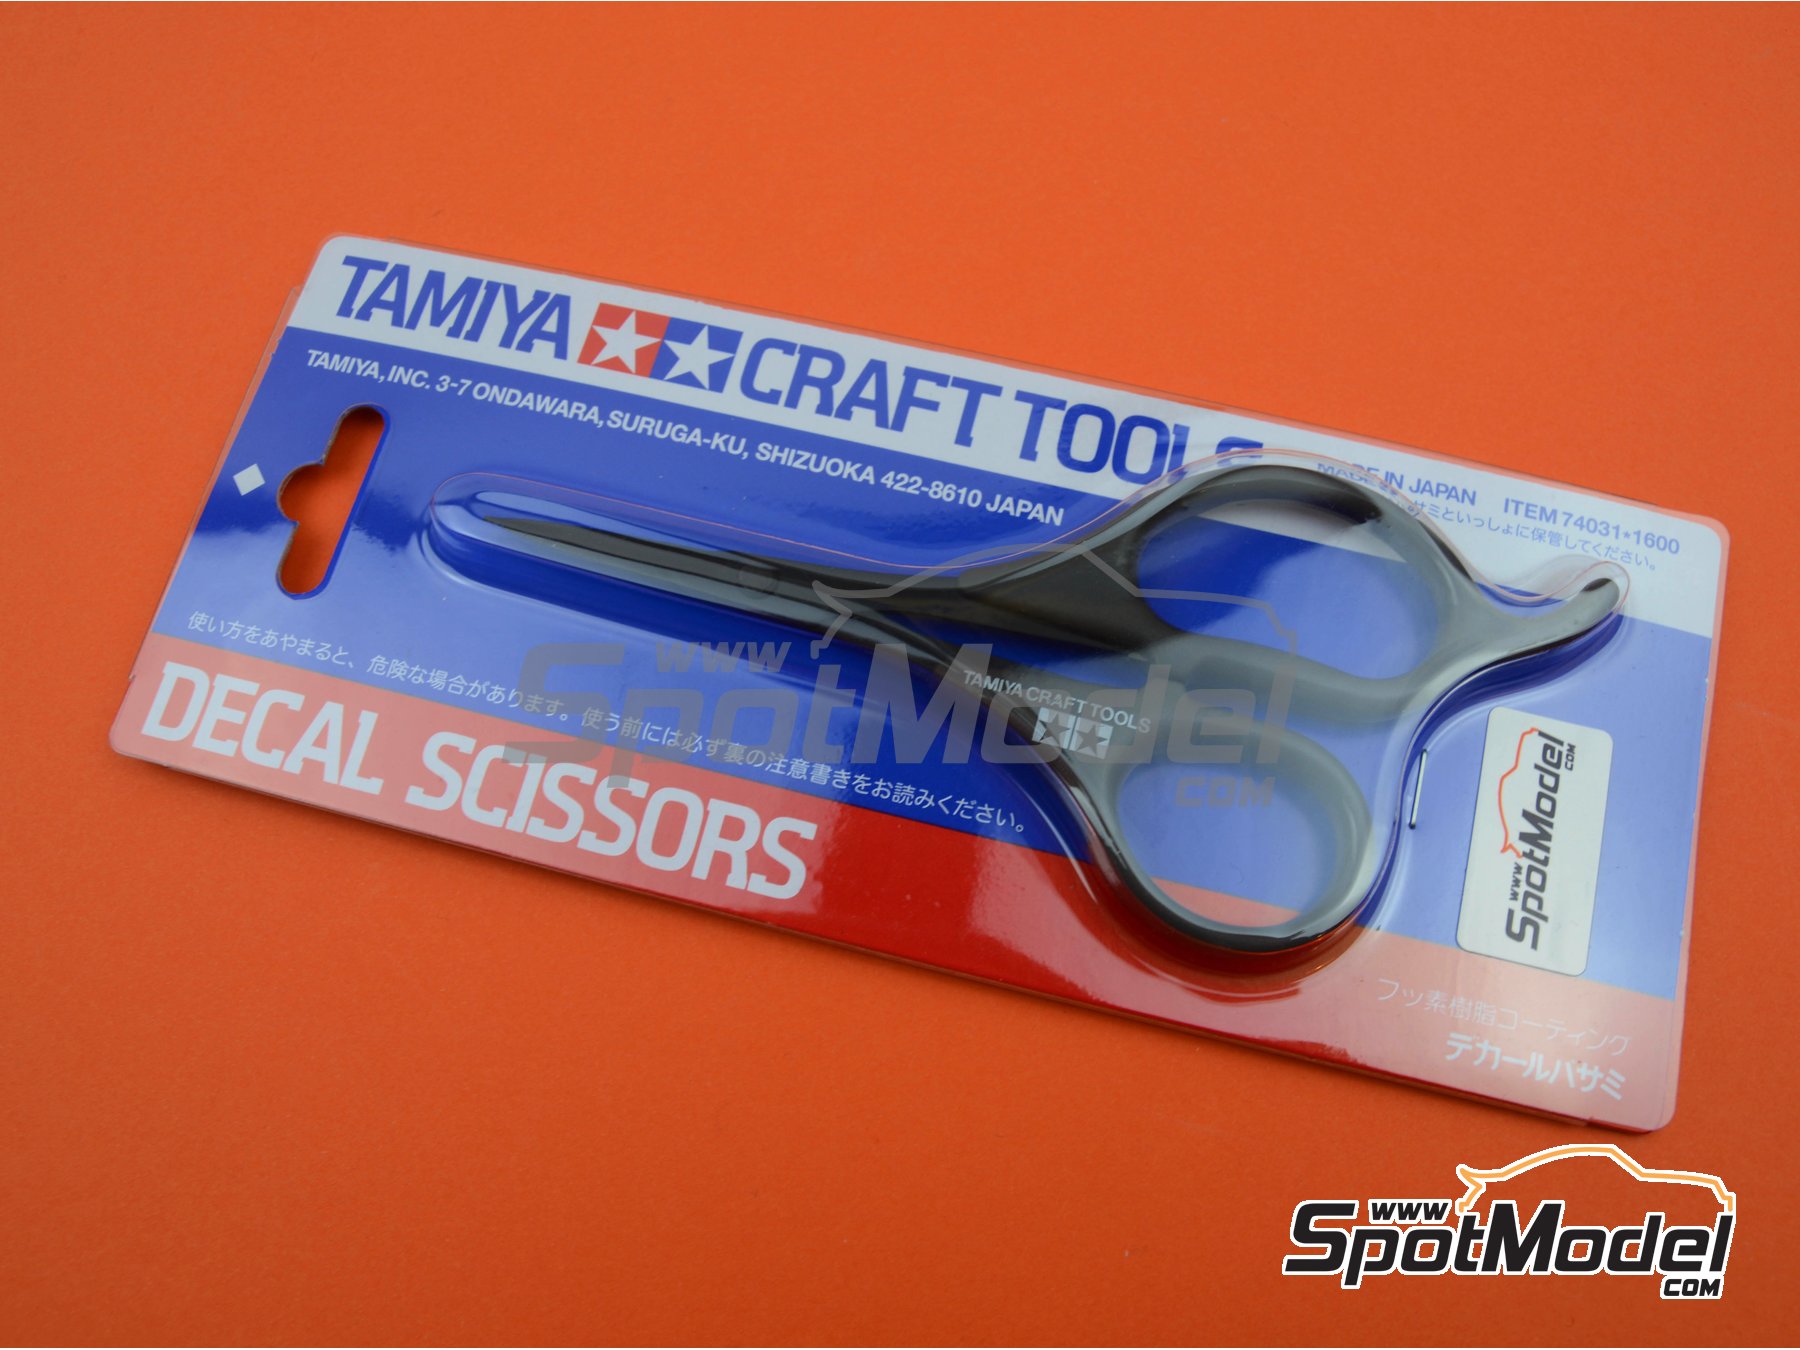 Hobby Model Tools Tamiya, Tamiya Cutting A4 Mat, Tamiya Cut Tool